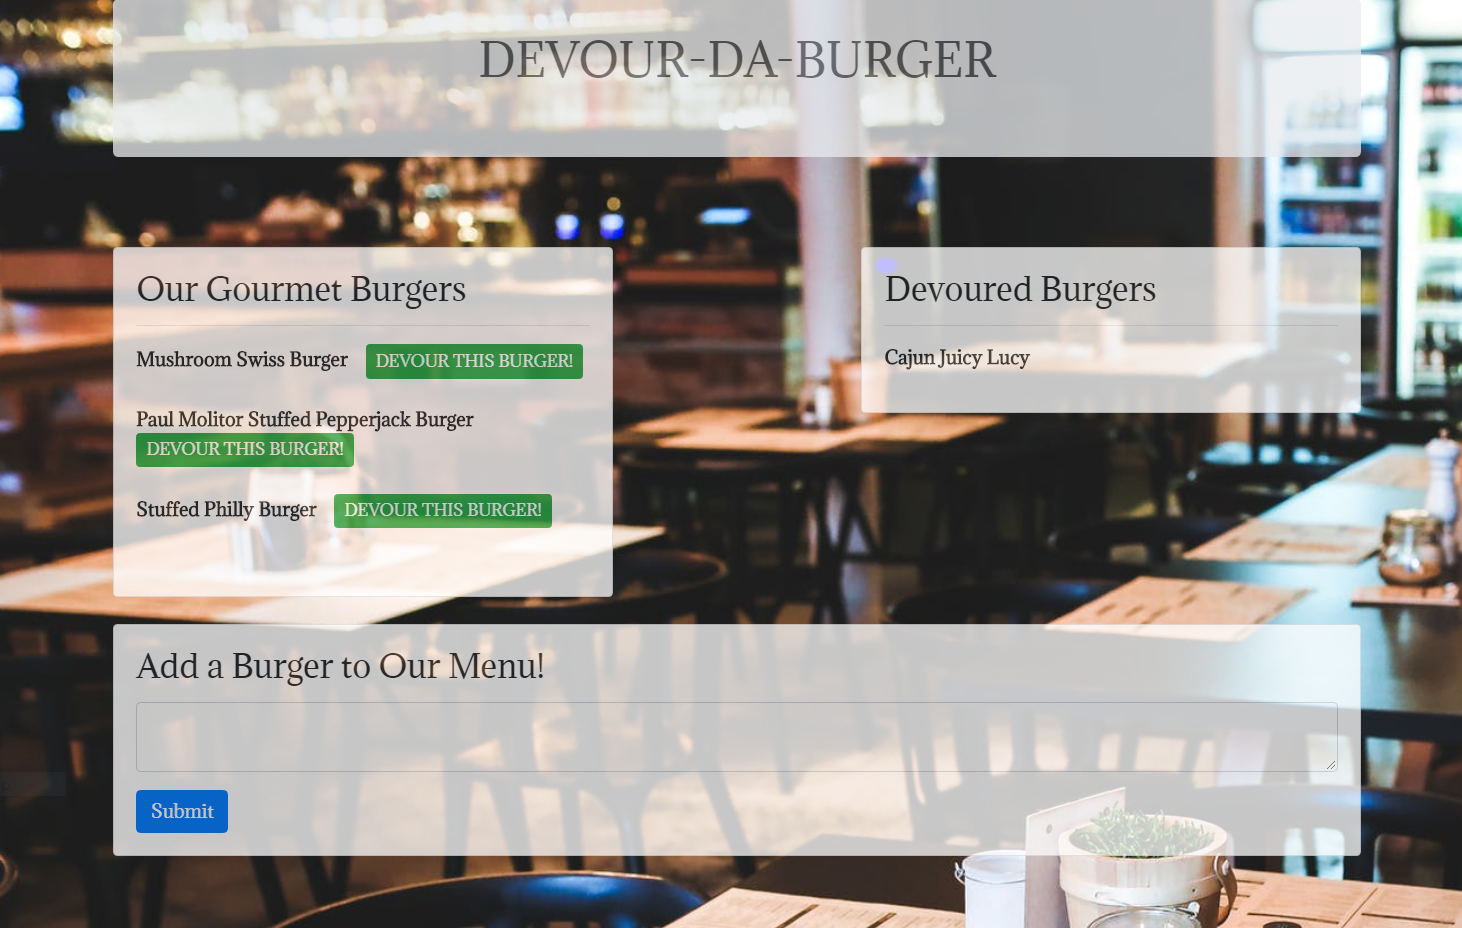 Devour-Da-Burger